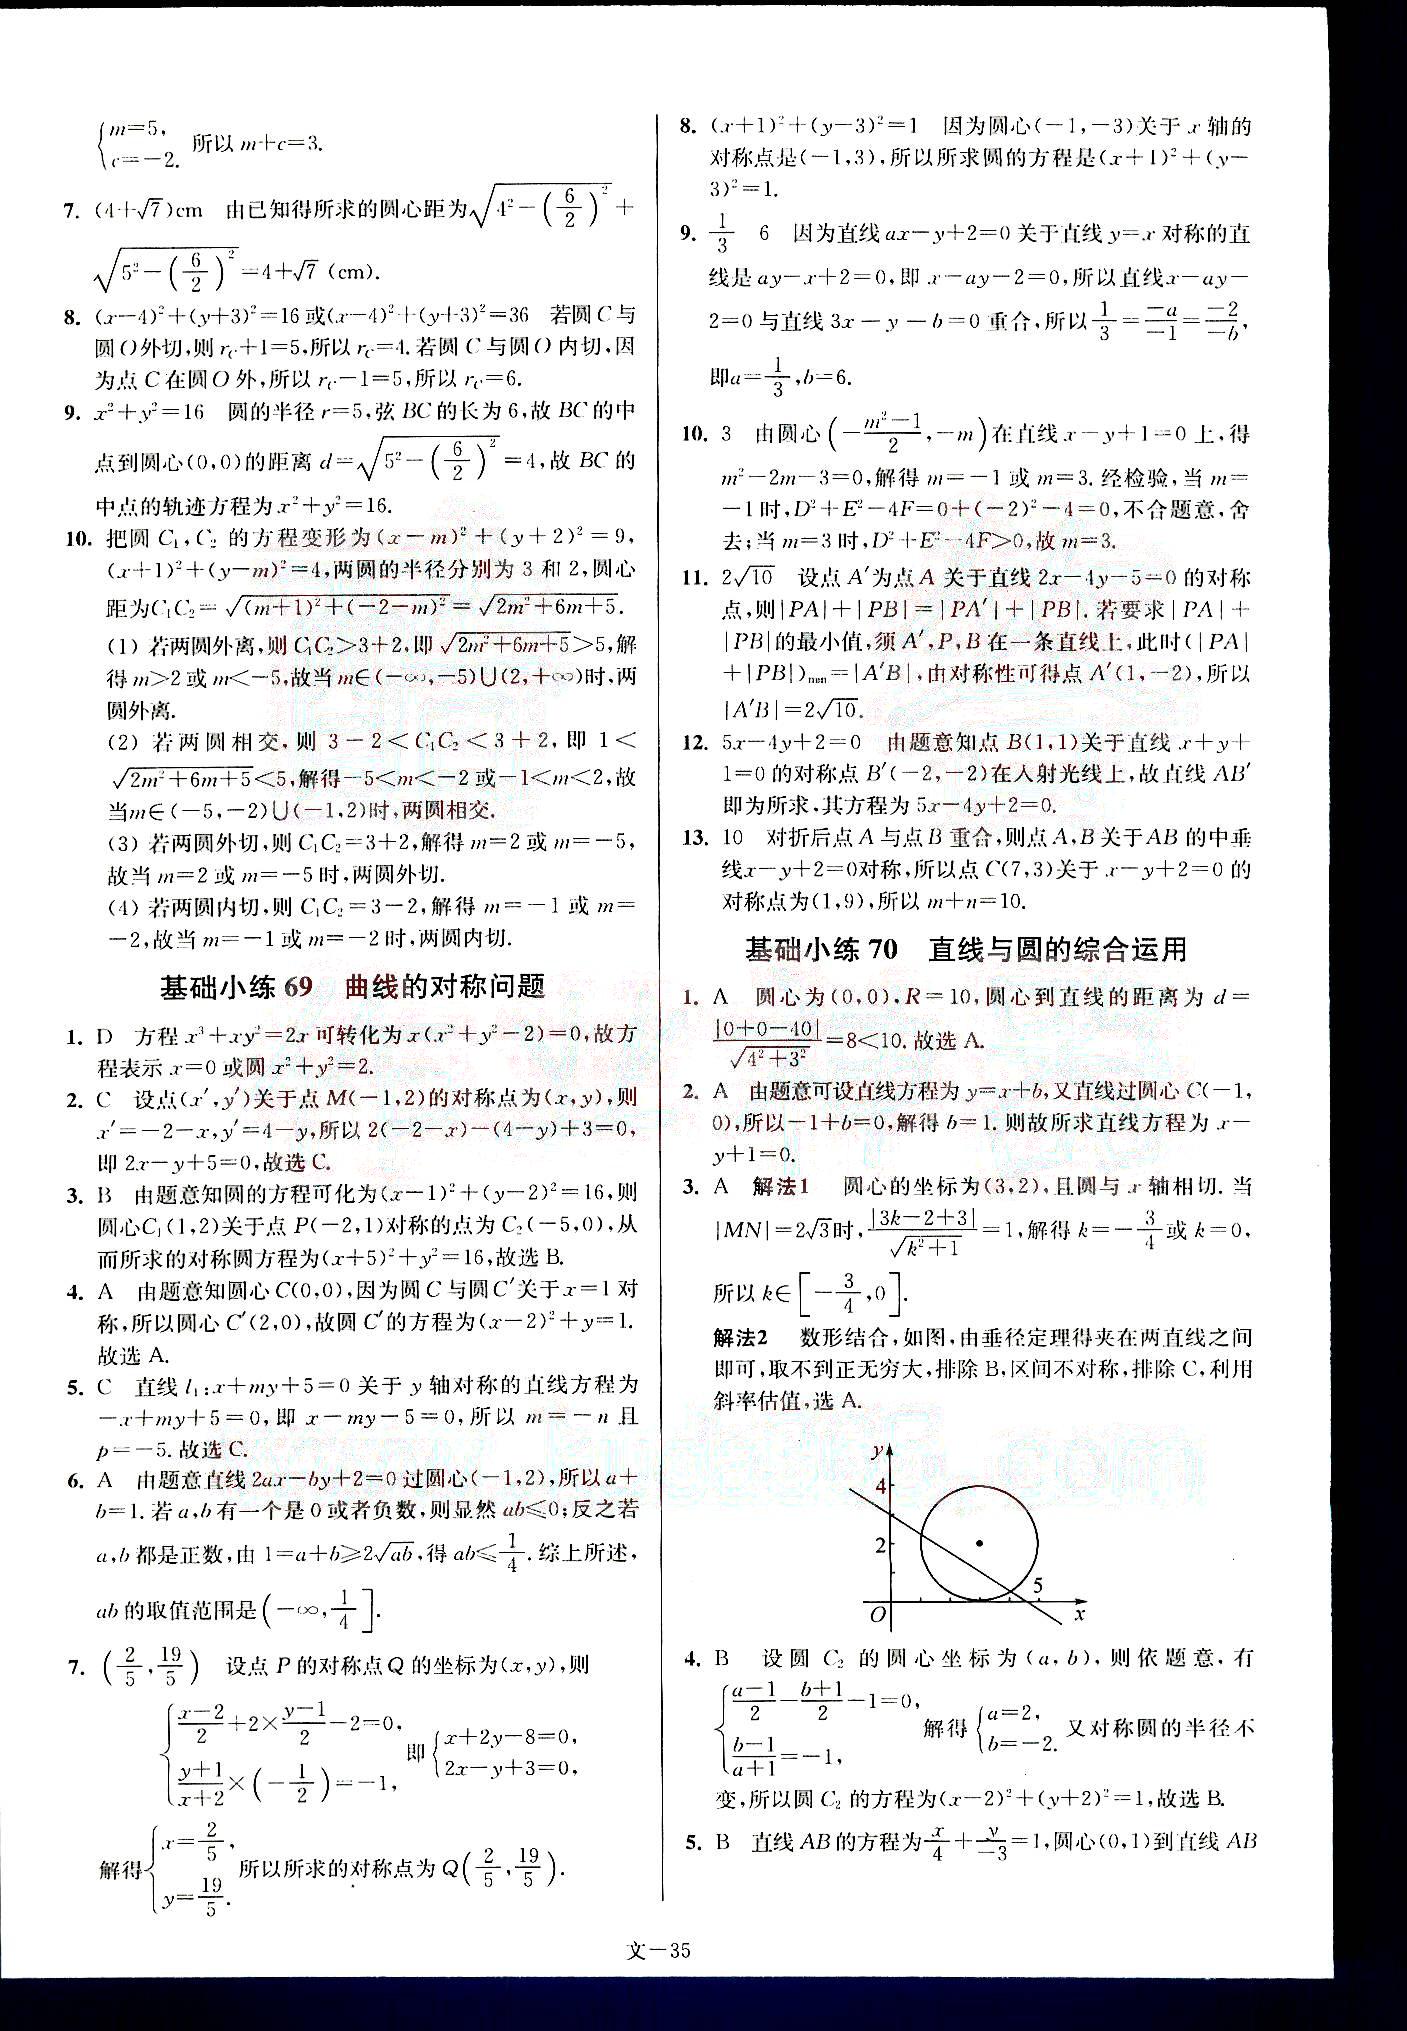 小题狂做-高考数学-文科-最基础篇南京大学出版社 第7部分 [5]